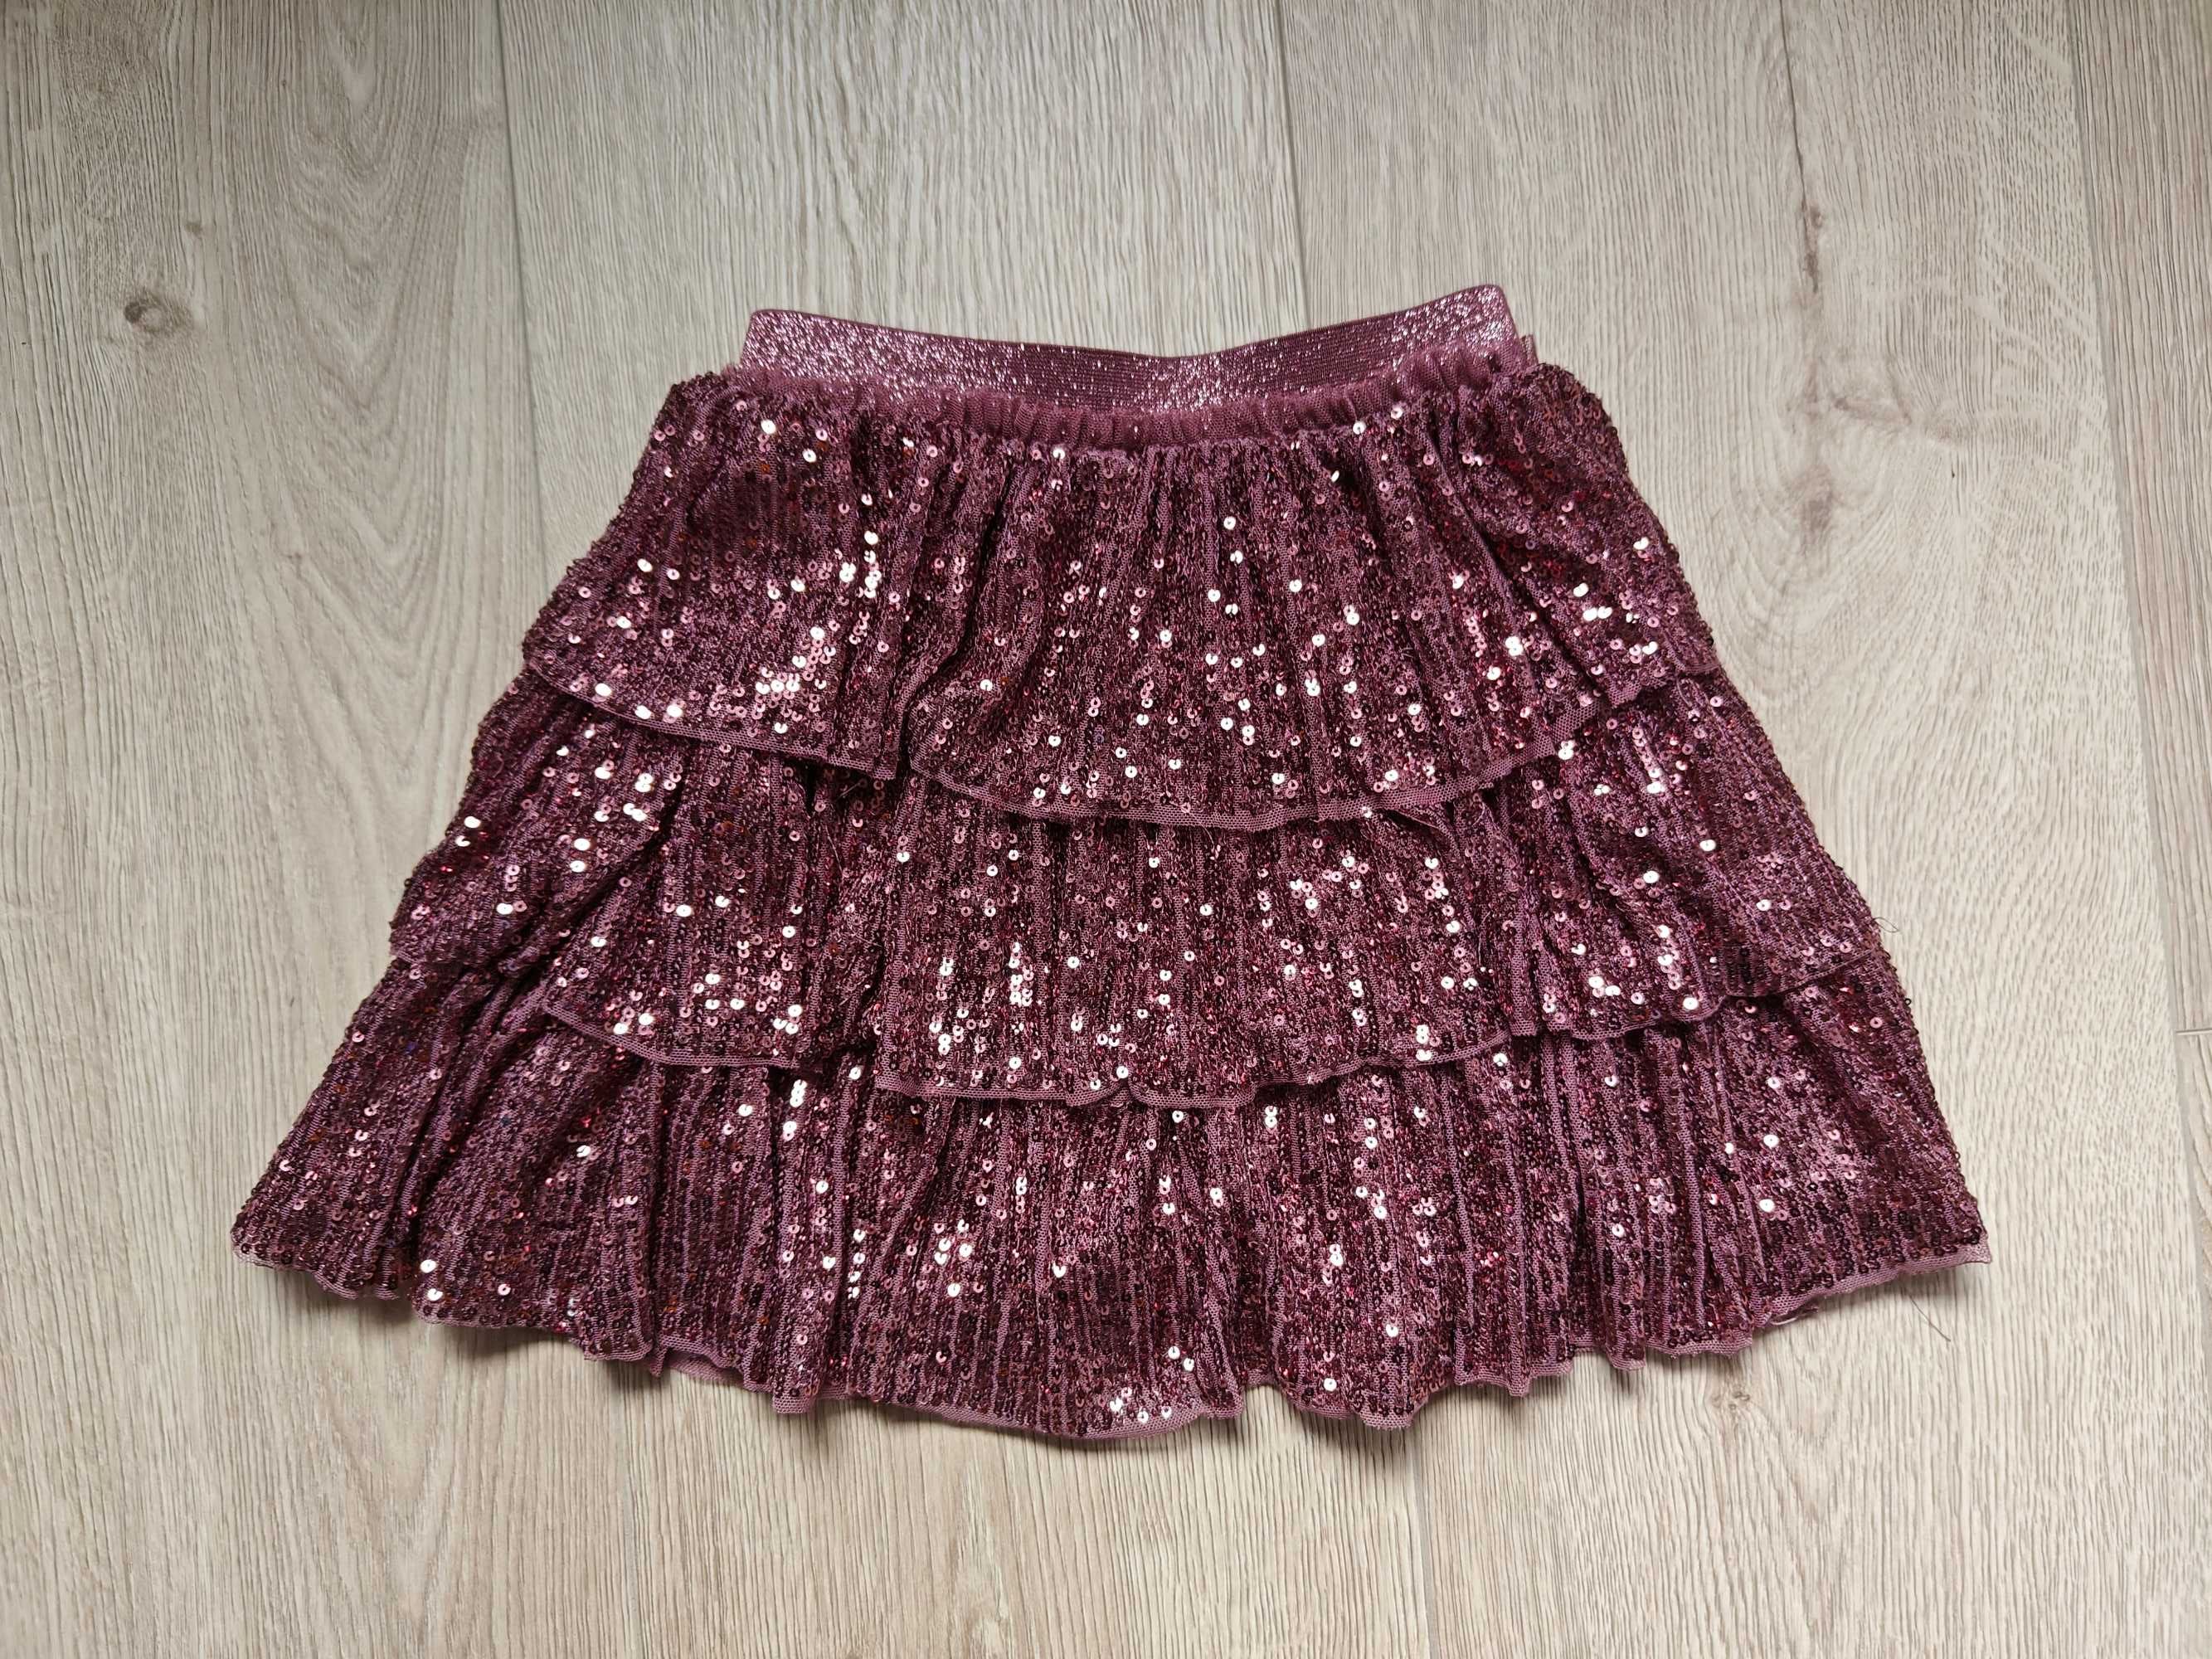 Nowa różowa bordowa spódniczka w cekiny święta sylwester 122